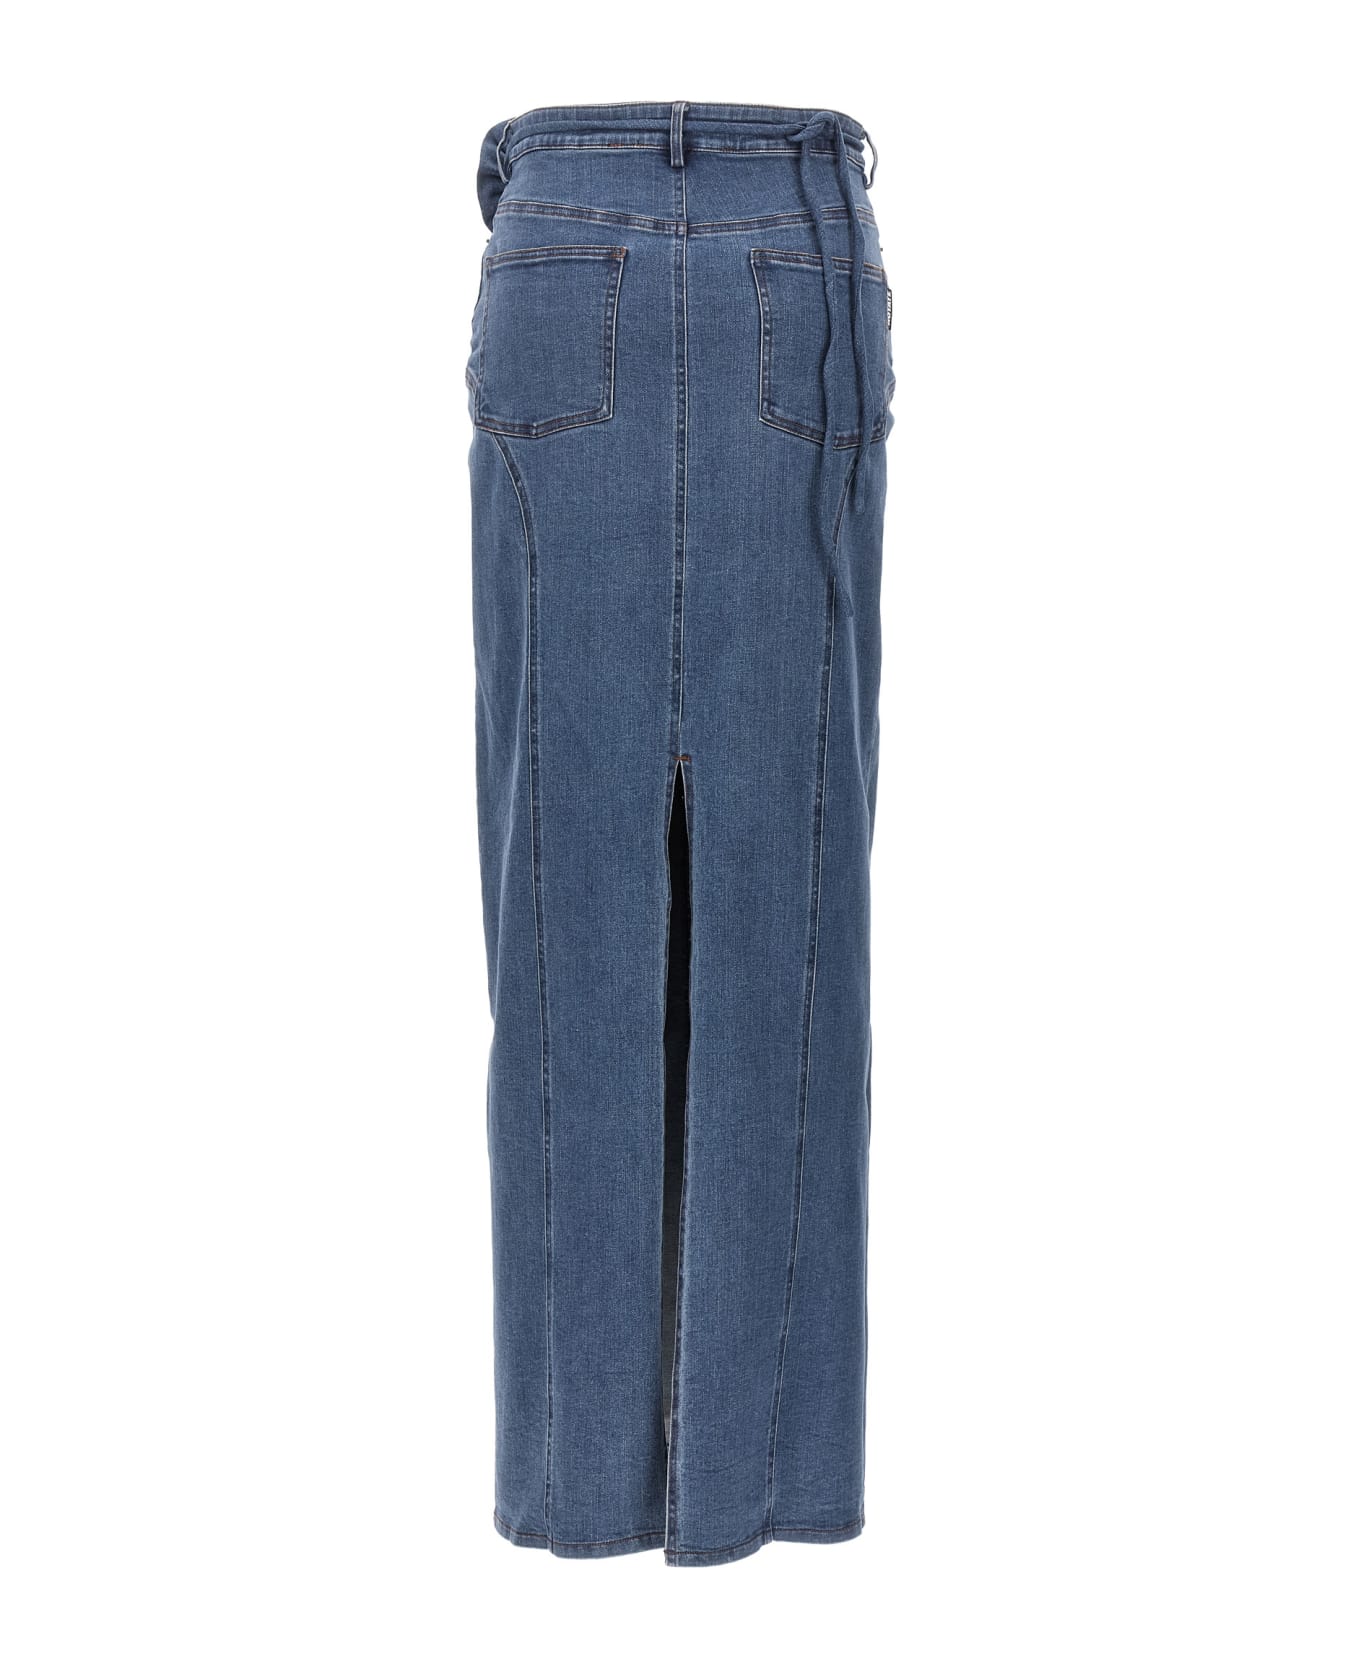 Rotate by Birger Christensen Long Skirt With Flowered Belt Denim - Blue